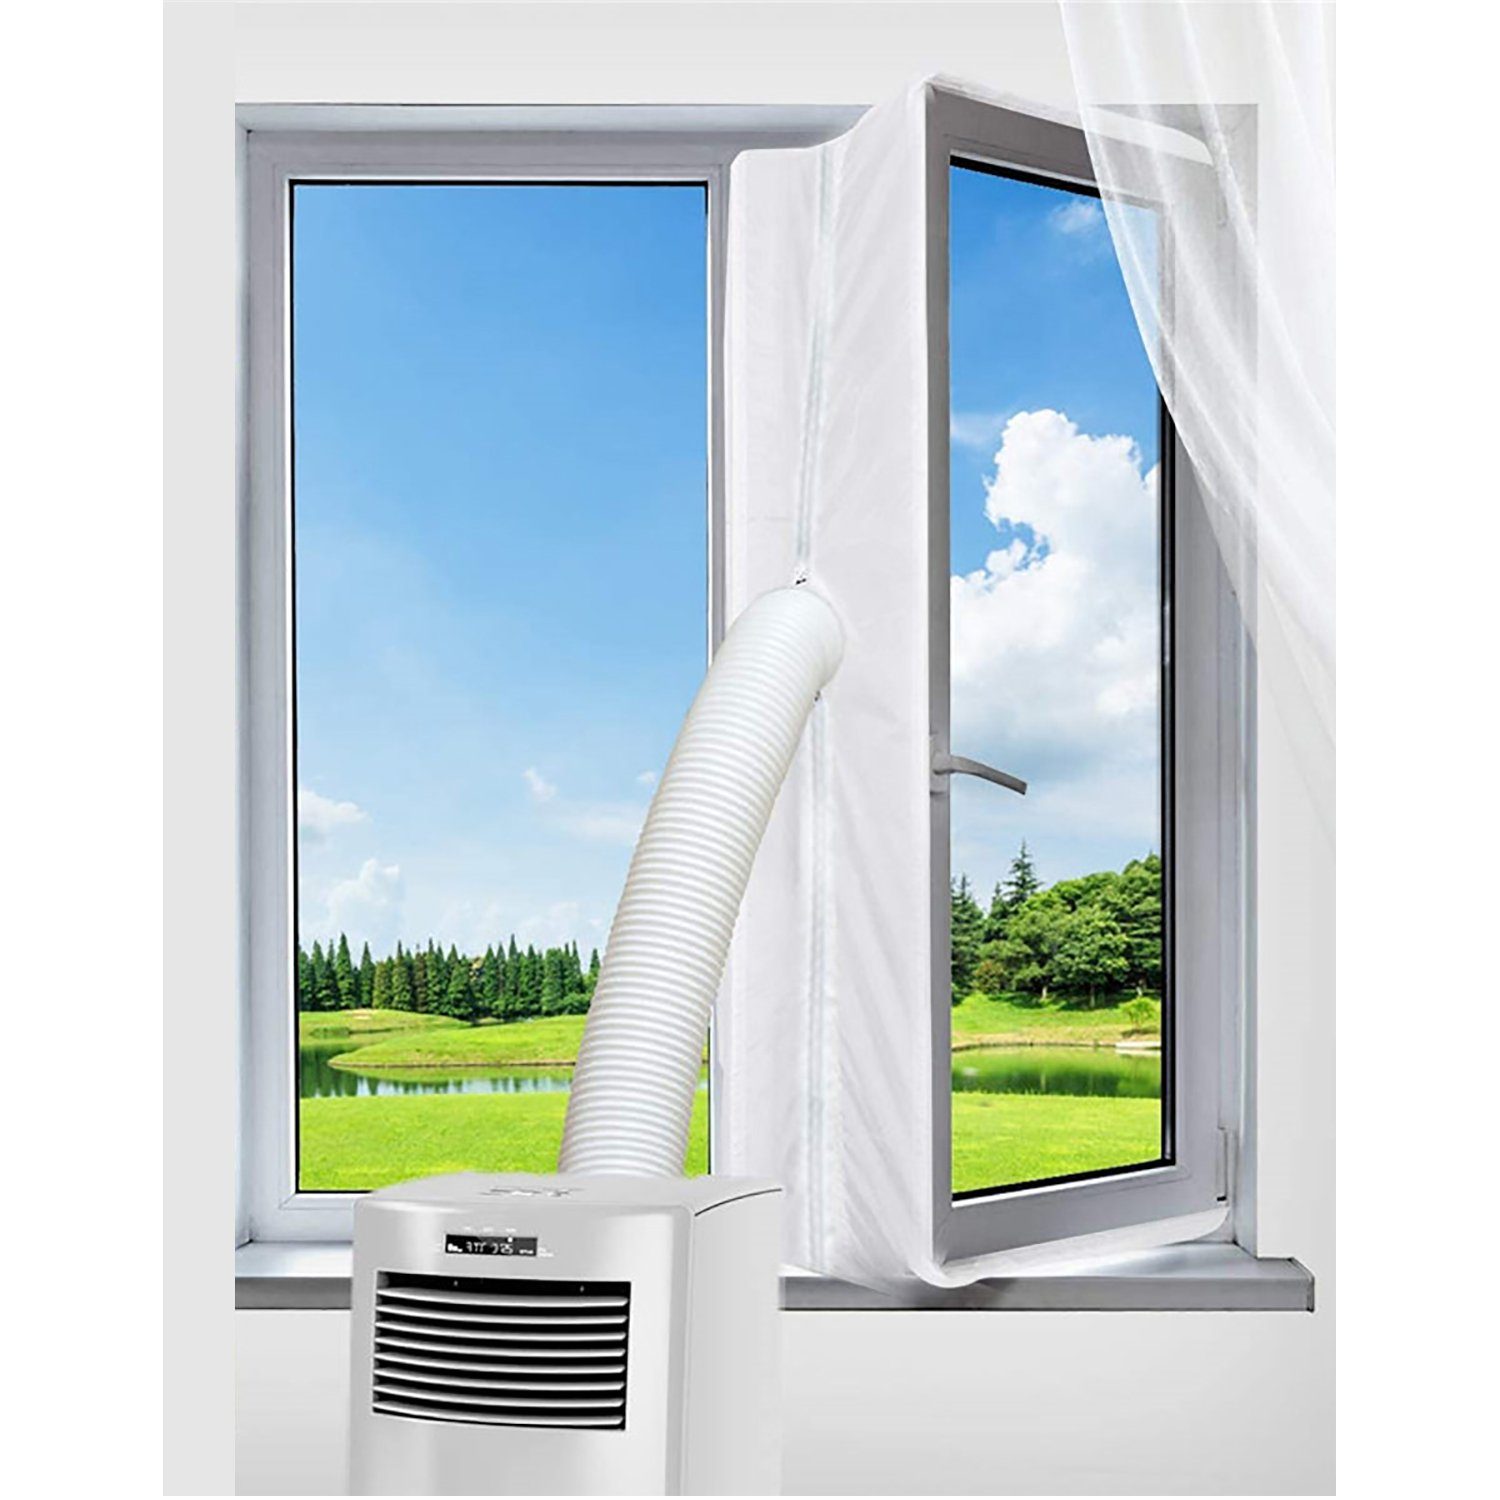 TPFLiving Fenster-Set Erweiterung Zubehör 3 Außenhitze, Mobile Abdichtung Klimagerät, Zubehör für Fensterkit das Fenster für von Meter Klimageräte und Stop, Air Eindringen Trockner Hot verhindert 